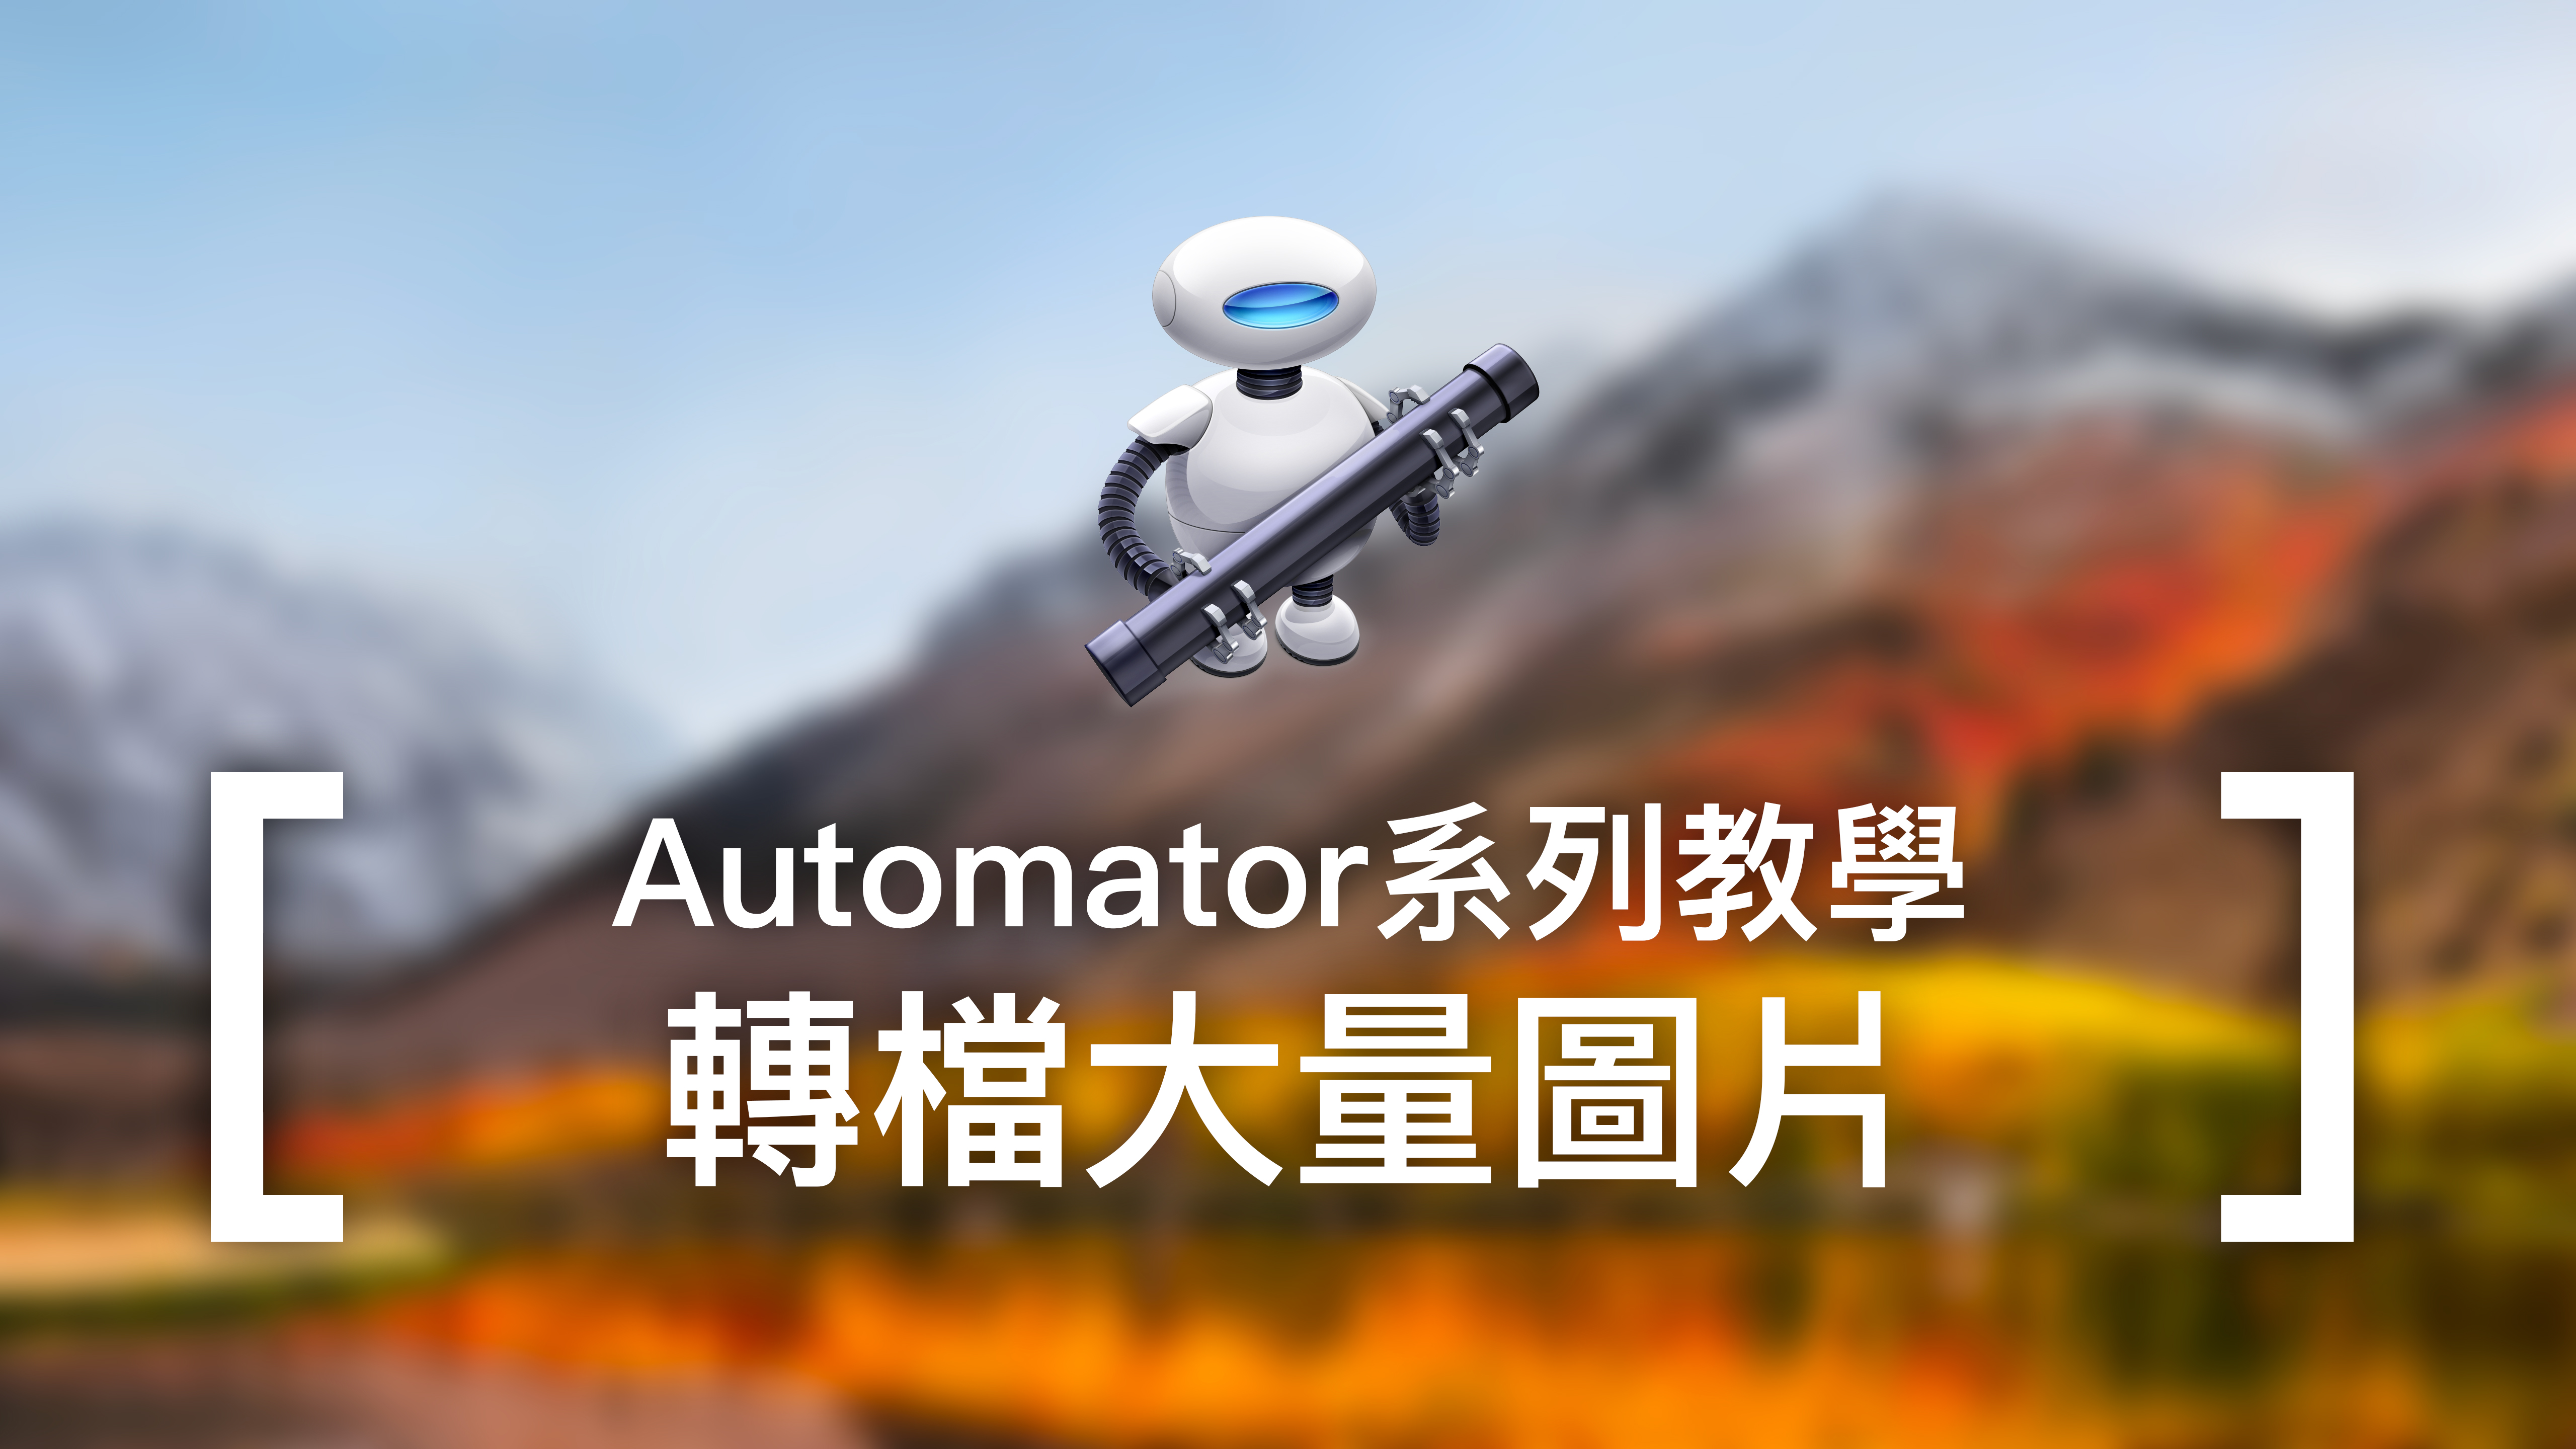 [Automator教學] 使用Automator轉檔大量圖片